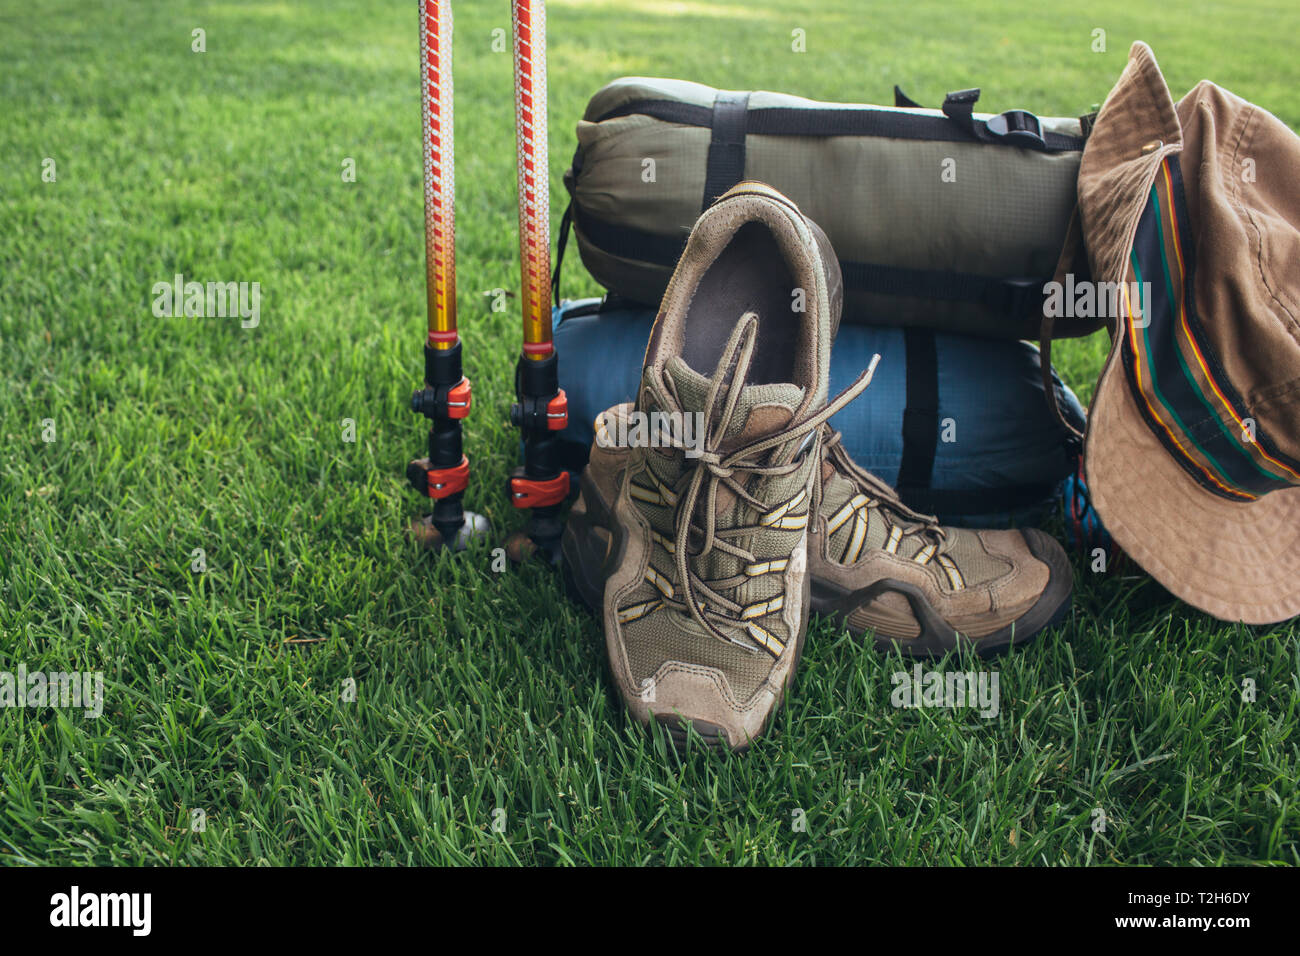 Pali trekking, stivali, , il sacco a pelo , hat e altre apparecchiature backpacker, sull'erba verde close-up Foto Stock